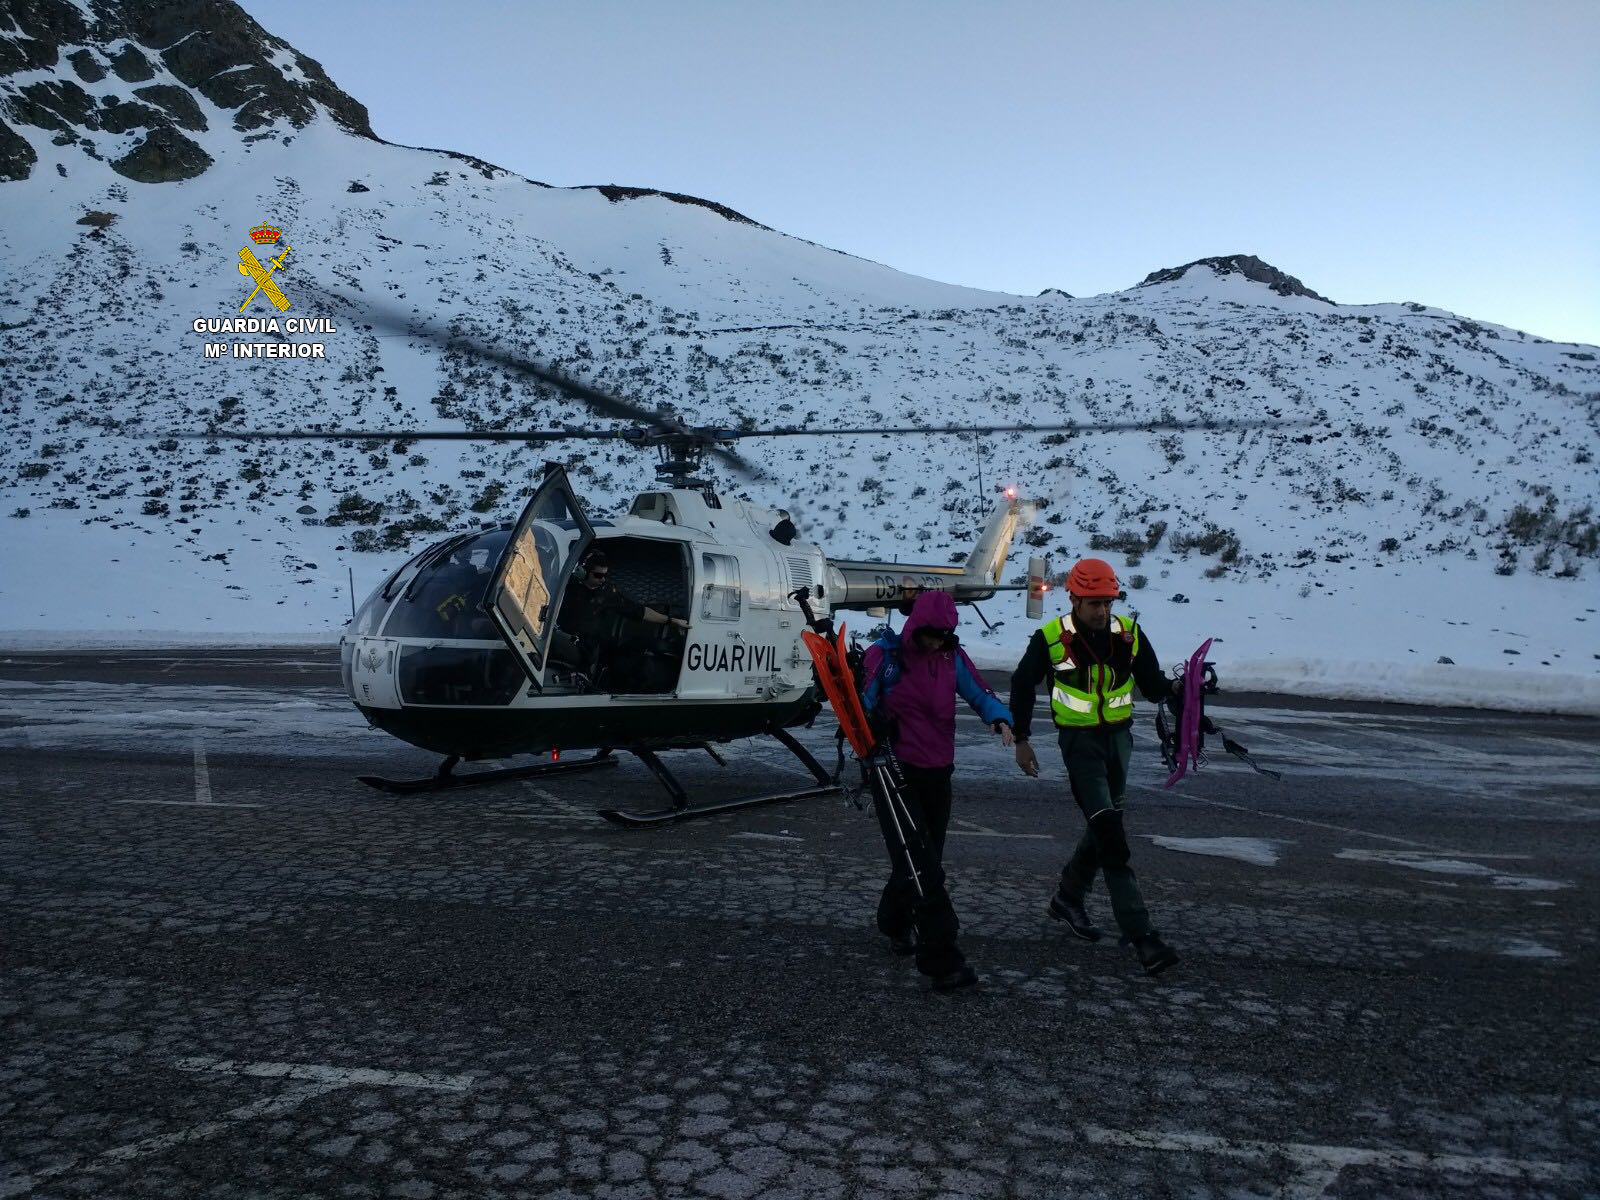 helicóptero Guardia Civil rescate